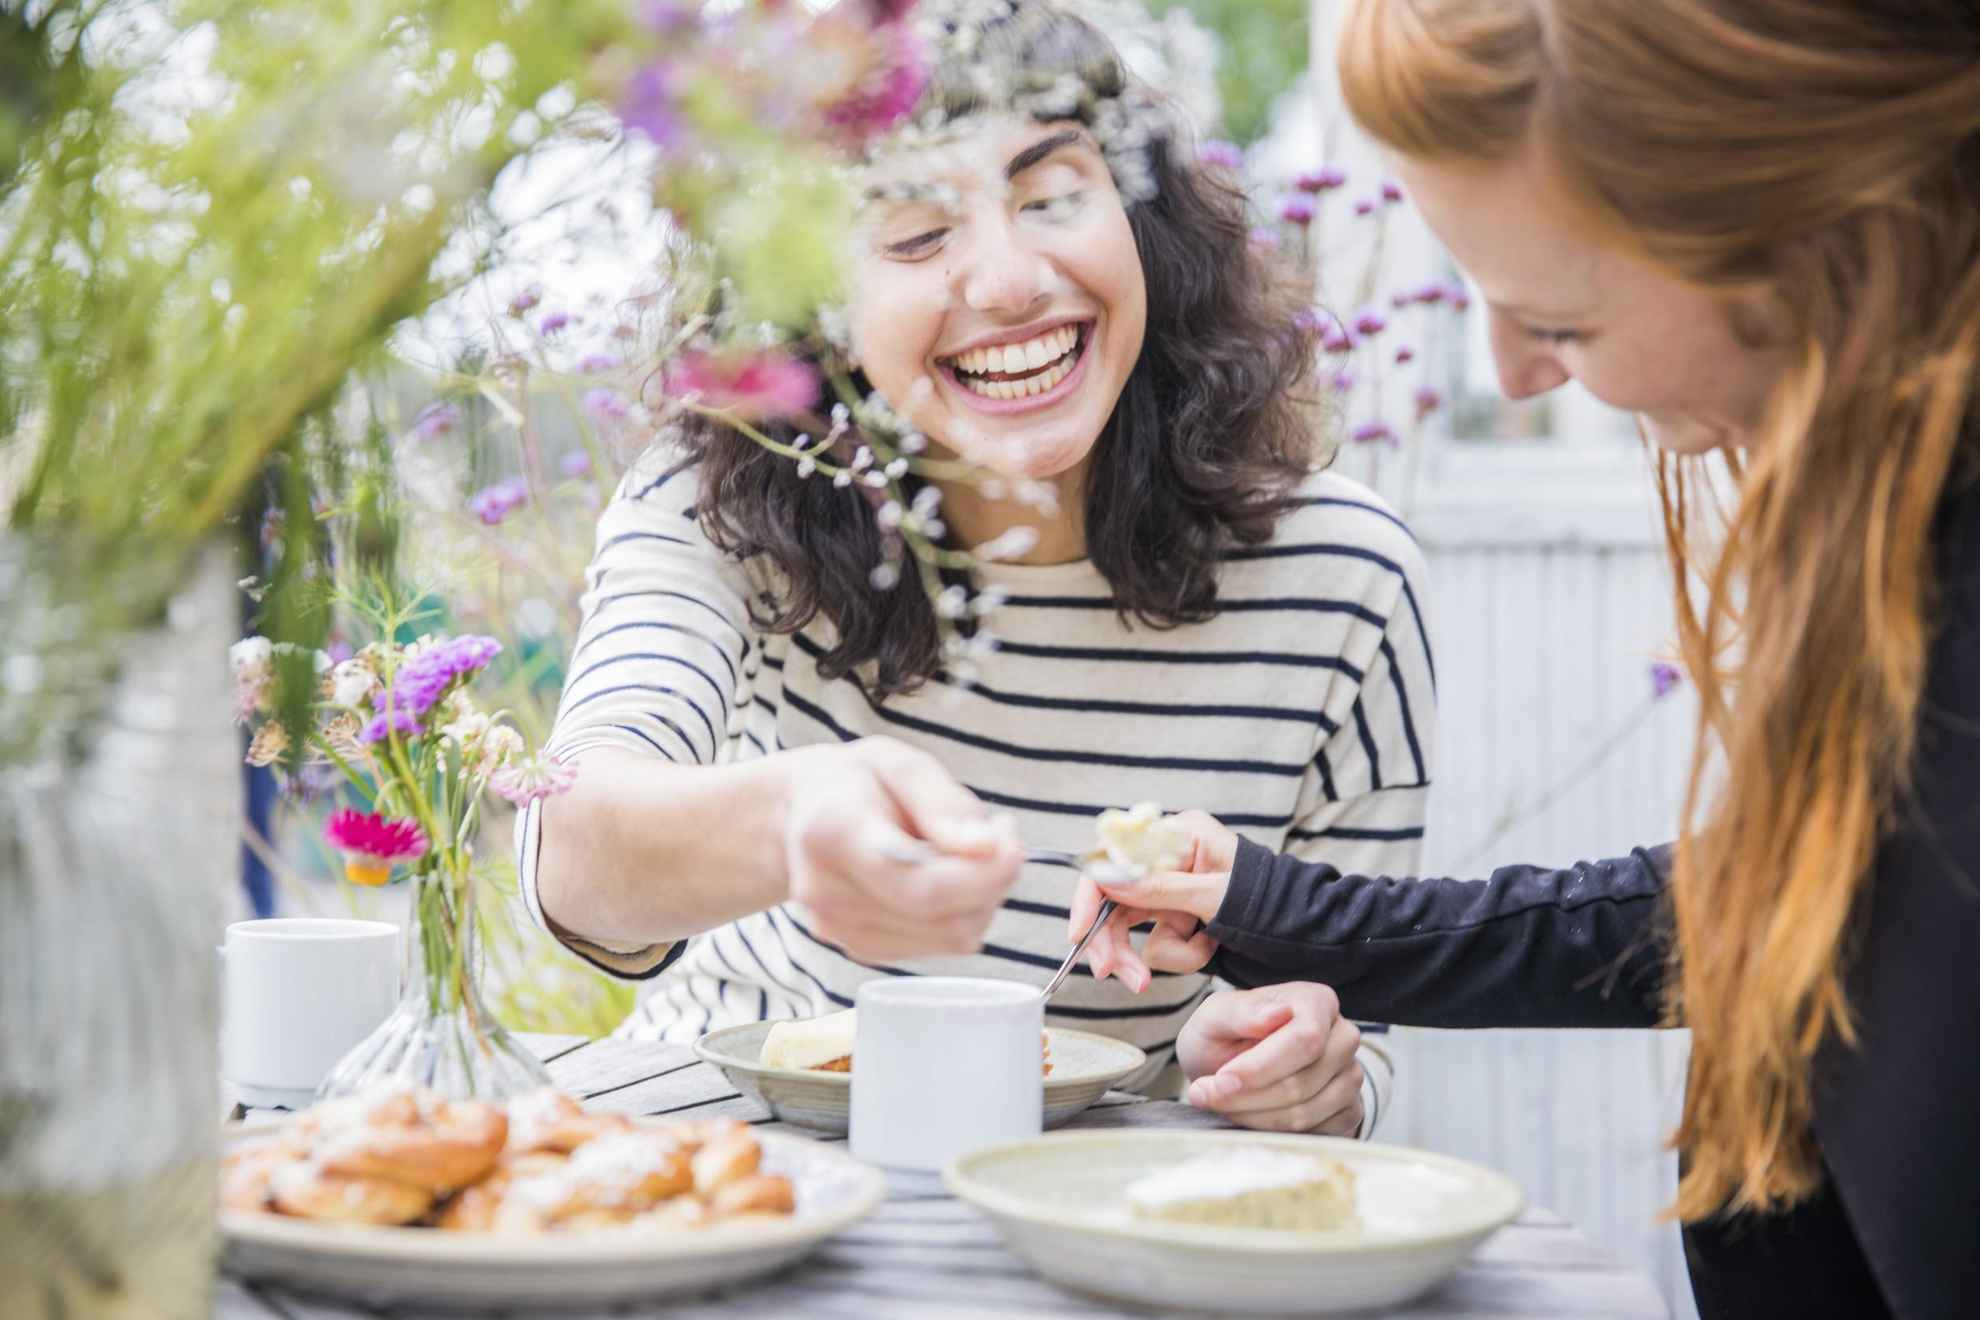 Twee vrouwen hebben een fika in de buitenlucht. Ze drinken koffie en delen taart met elkaar. Op tafel staan een bord met broodjes en twee vazen met bloemen.